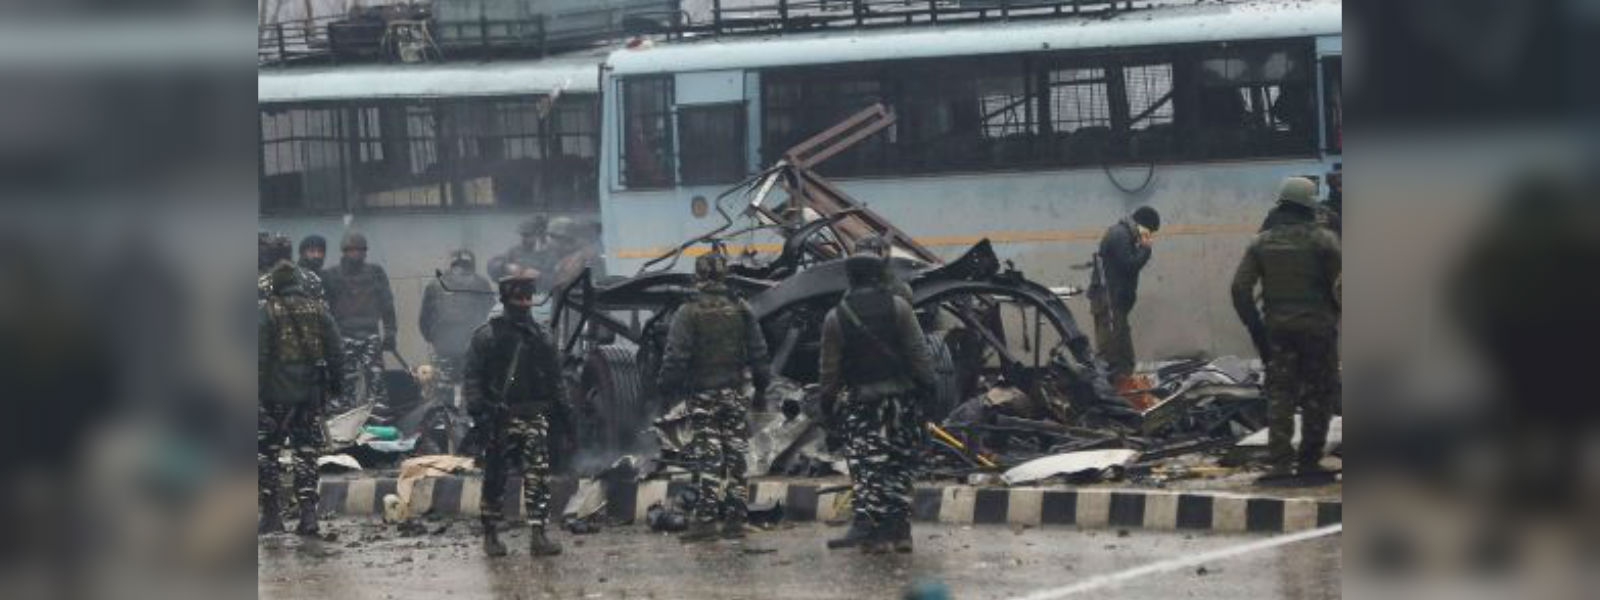 Kashmir car bomb kills 40; India demands Pakistan 